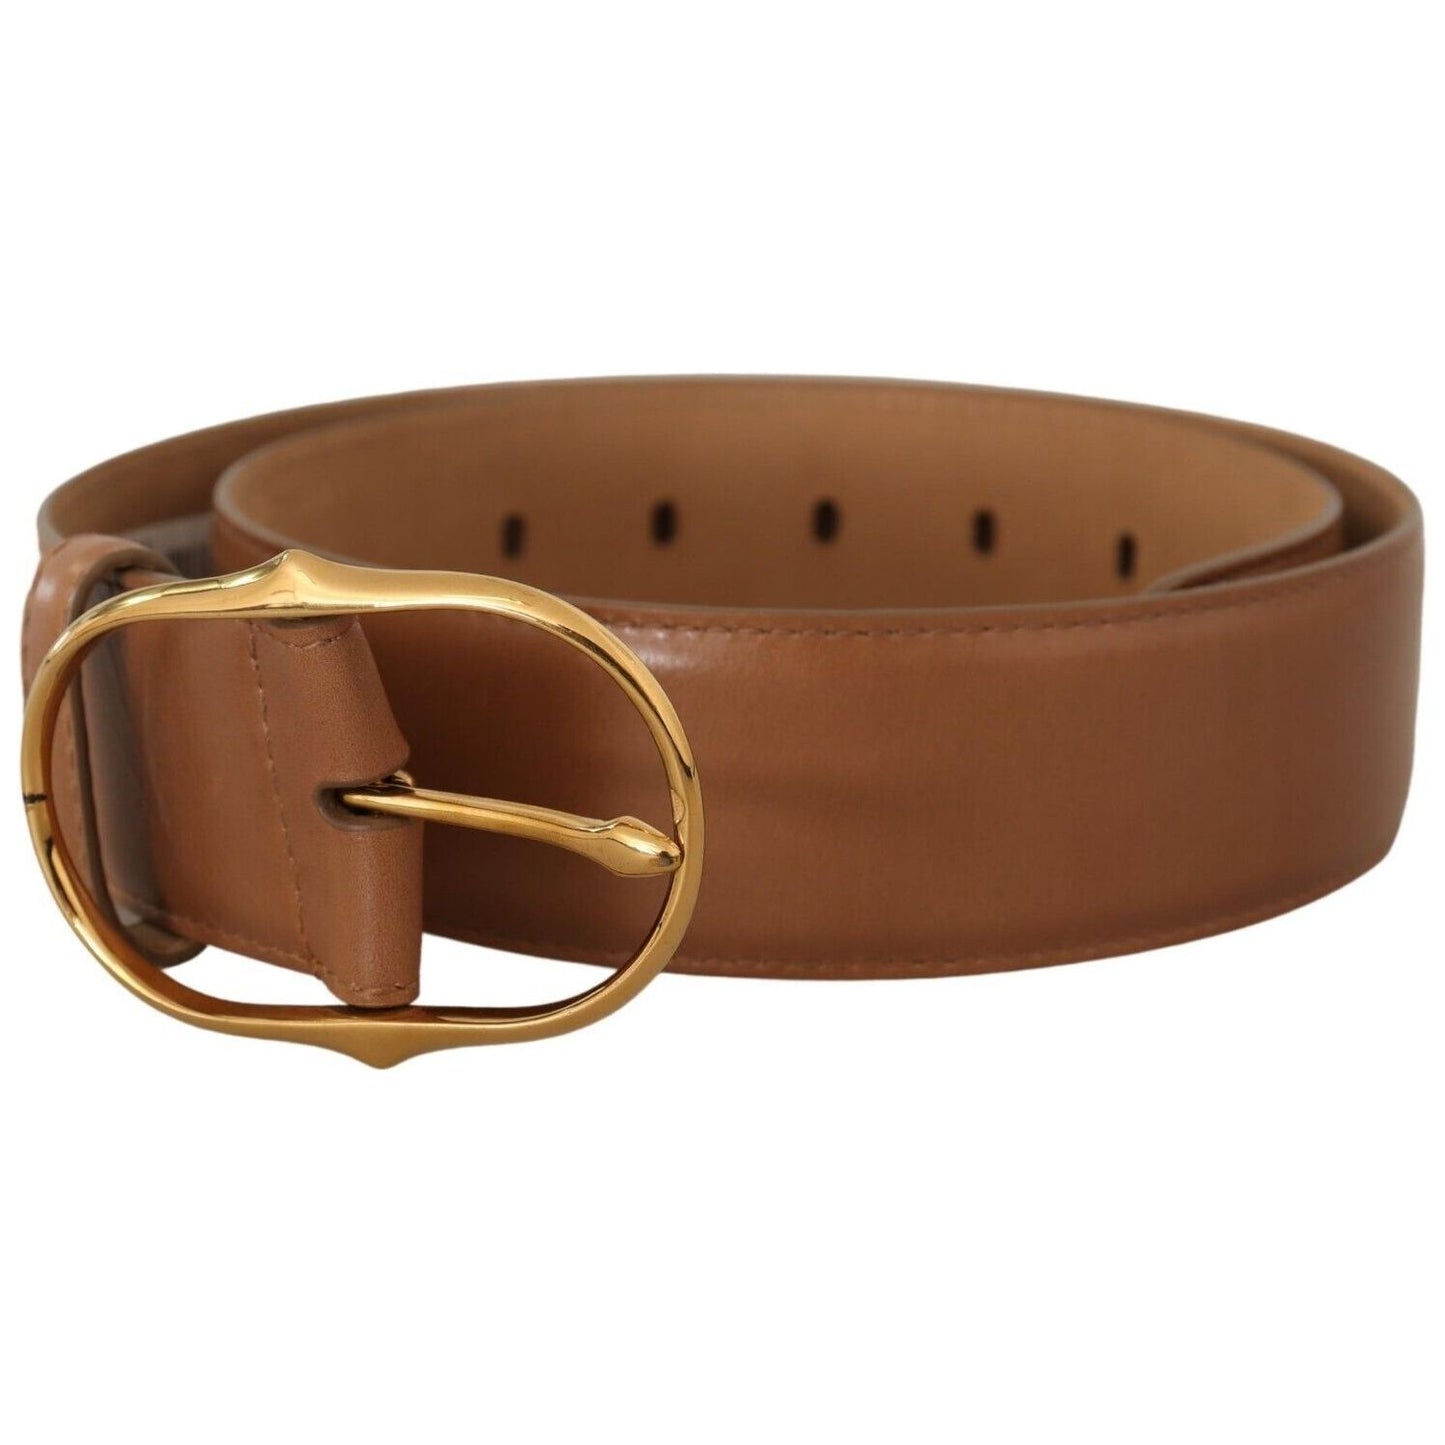 Dolce & Gabbana Elegant Gold Buckle Leather Belt brown-leather-gold-metal-oval-buckle-belt